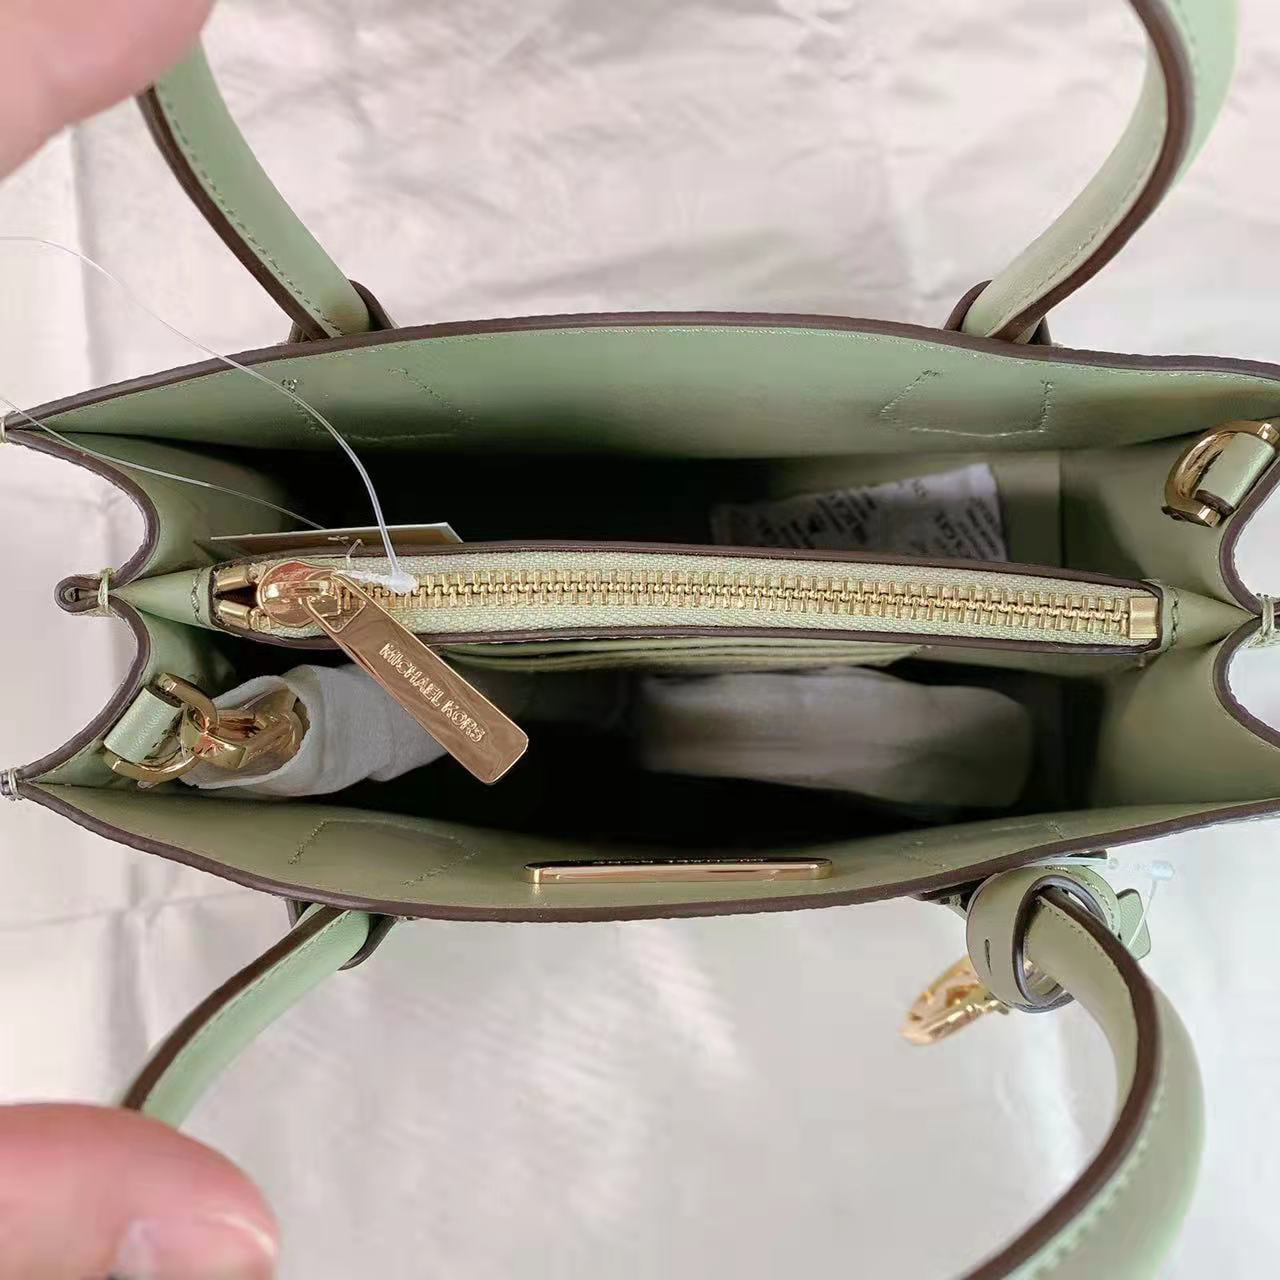 Michael Kors Mercer Medium Drawstring Bucket Messenger Handbag Purse Light  Sage